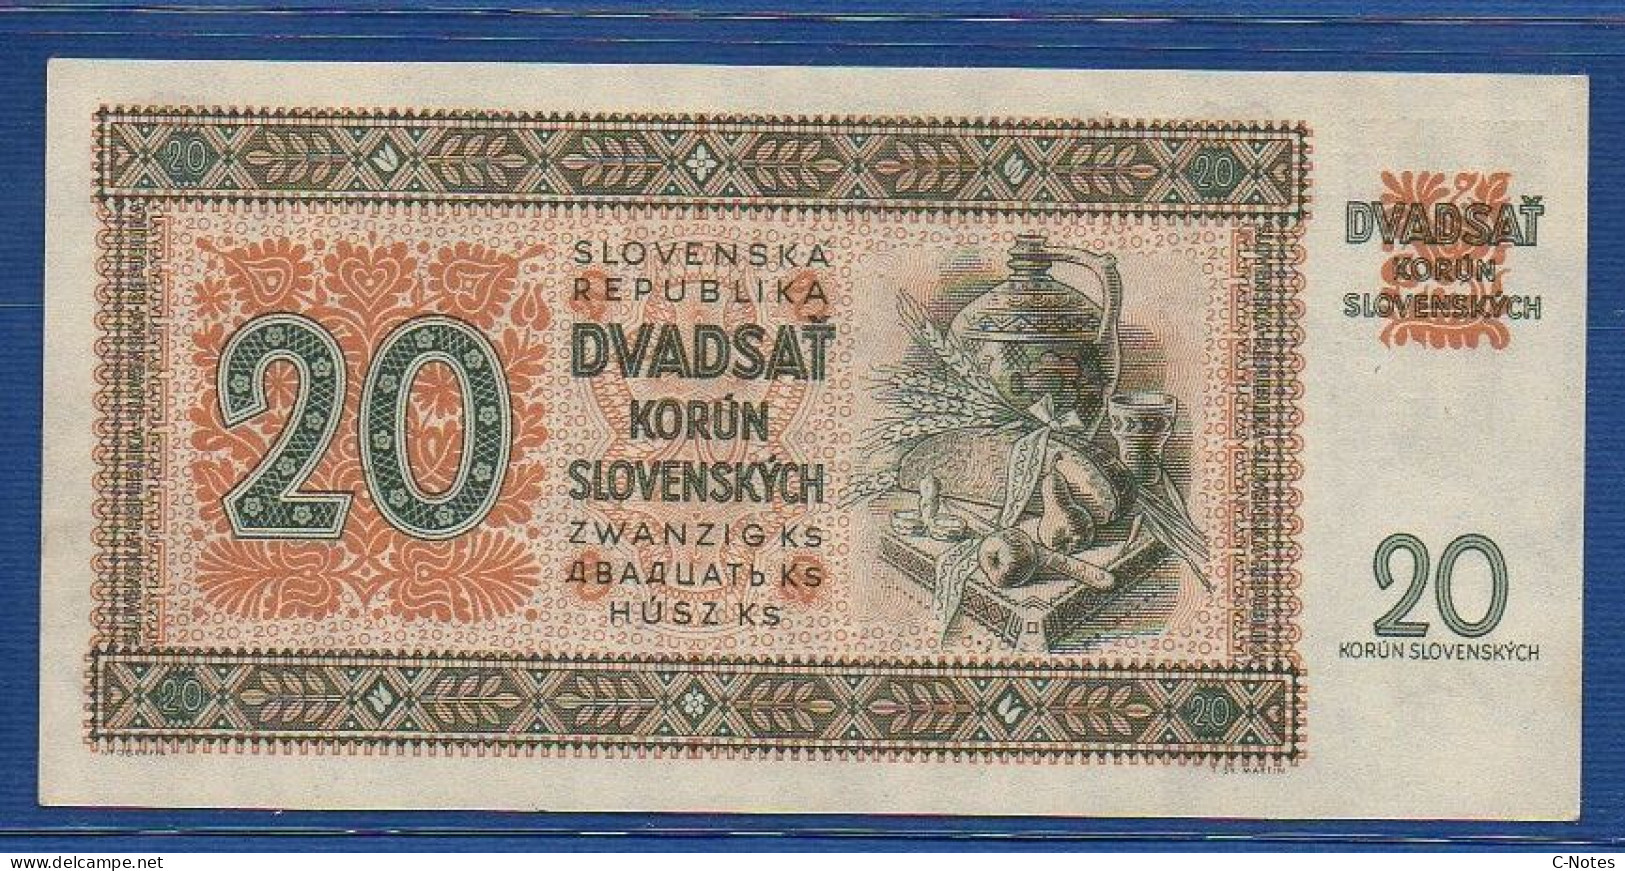 SLOVAKIA - P. 7a – 20 Korún Slovenských 1942 UNC- Serie Nz11 785452 - Slovaquie